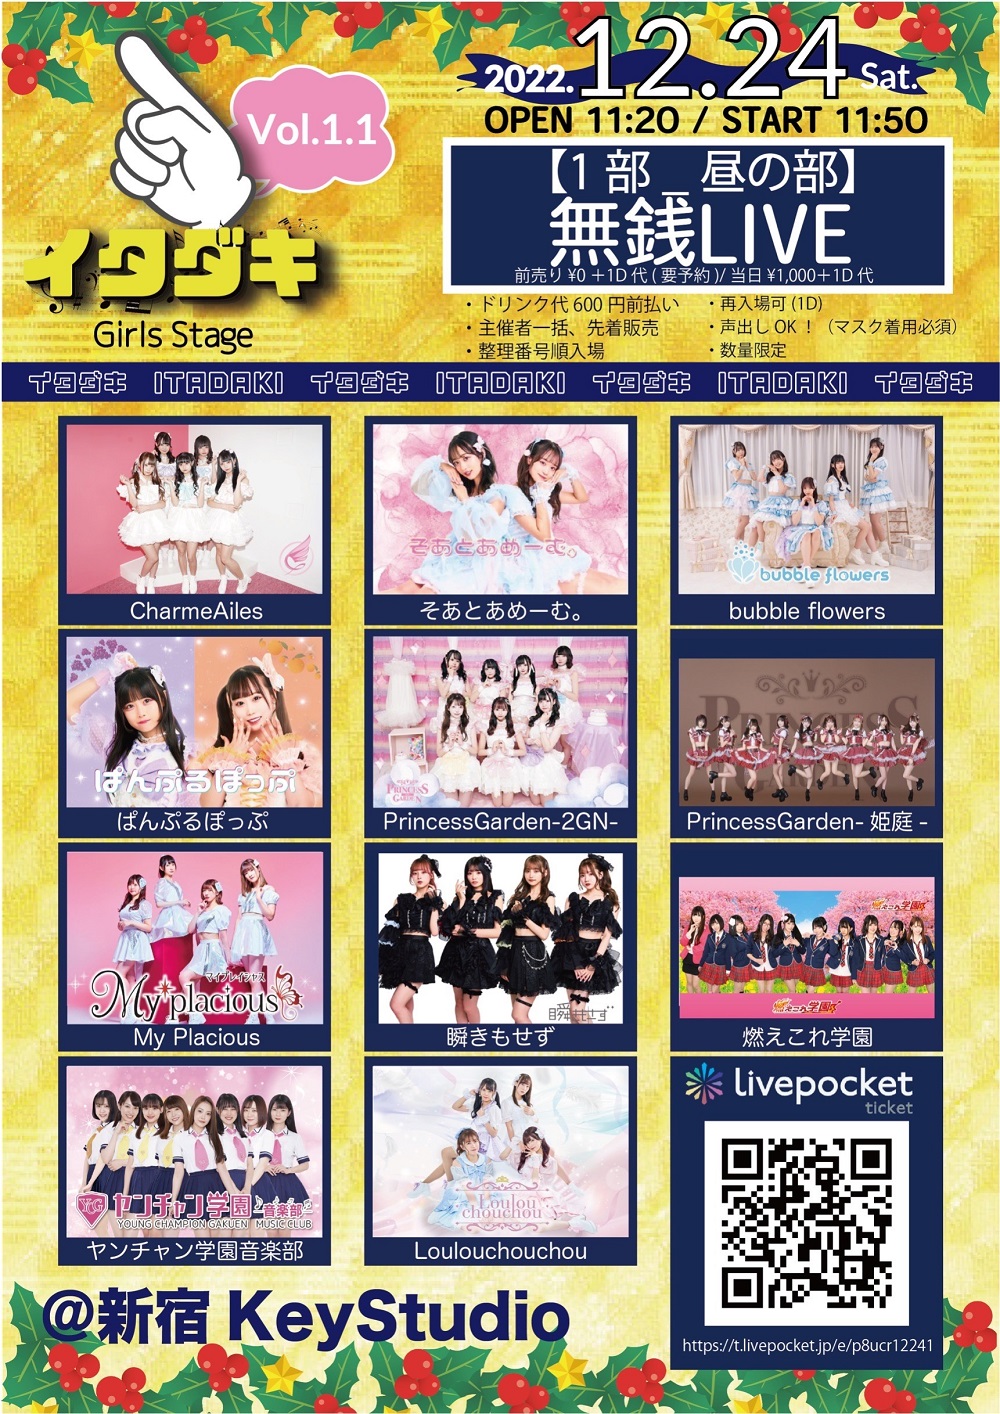 「イタダキ Vol.1 girls stage 無銭LIVE」1部